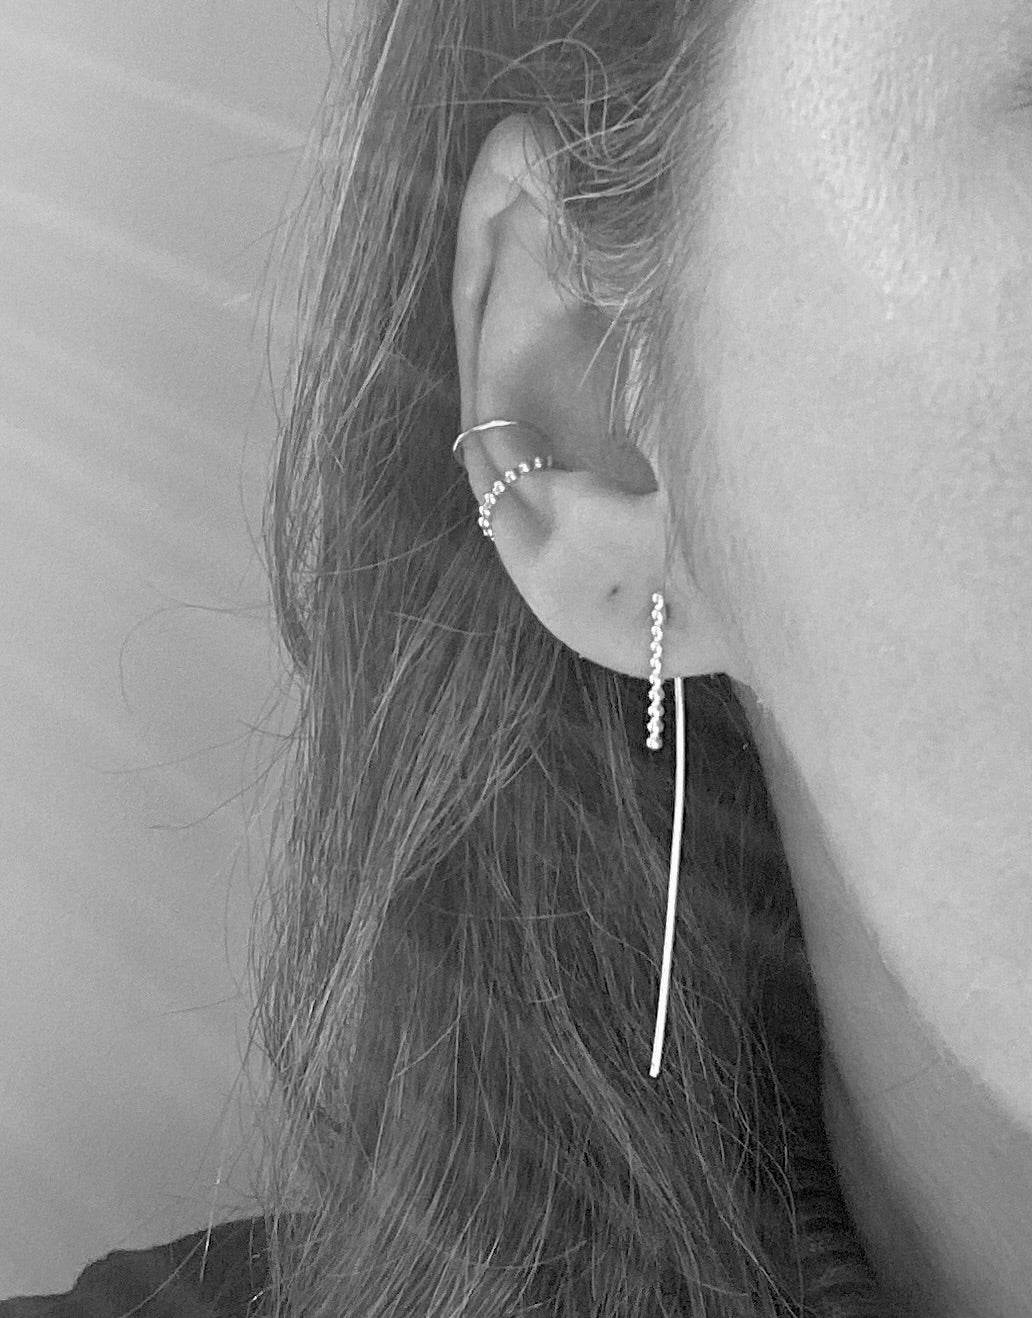 Silver thread through earrings